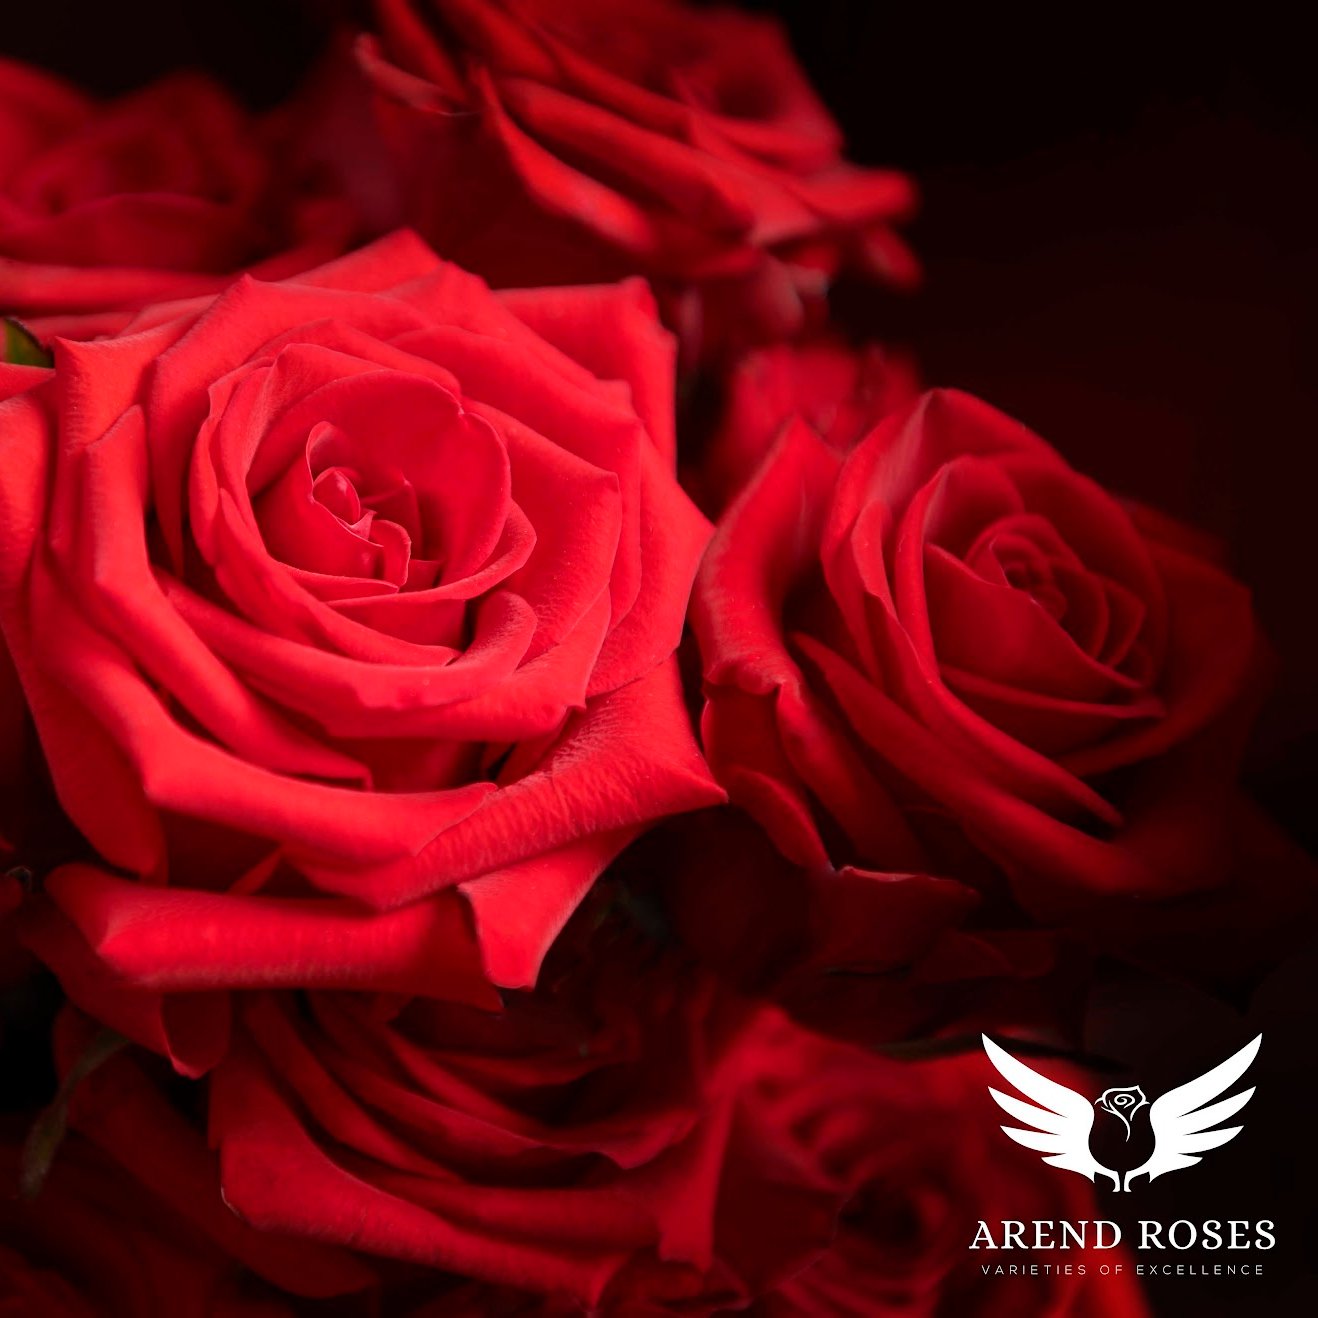 Návrat královny květin: Arend Roses obnovuje pěstování růží Red Eagle